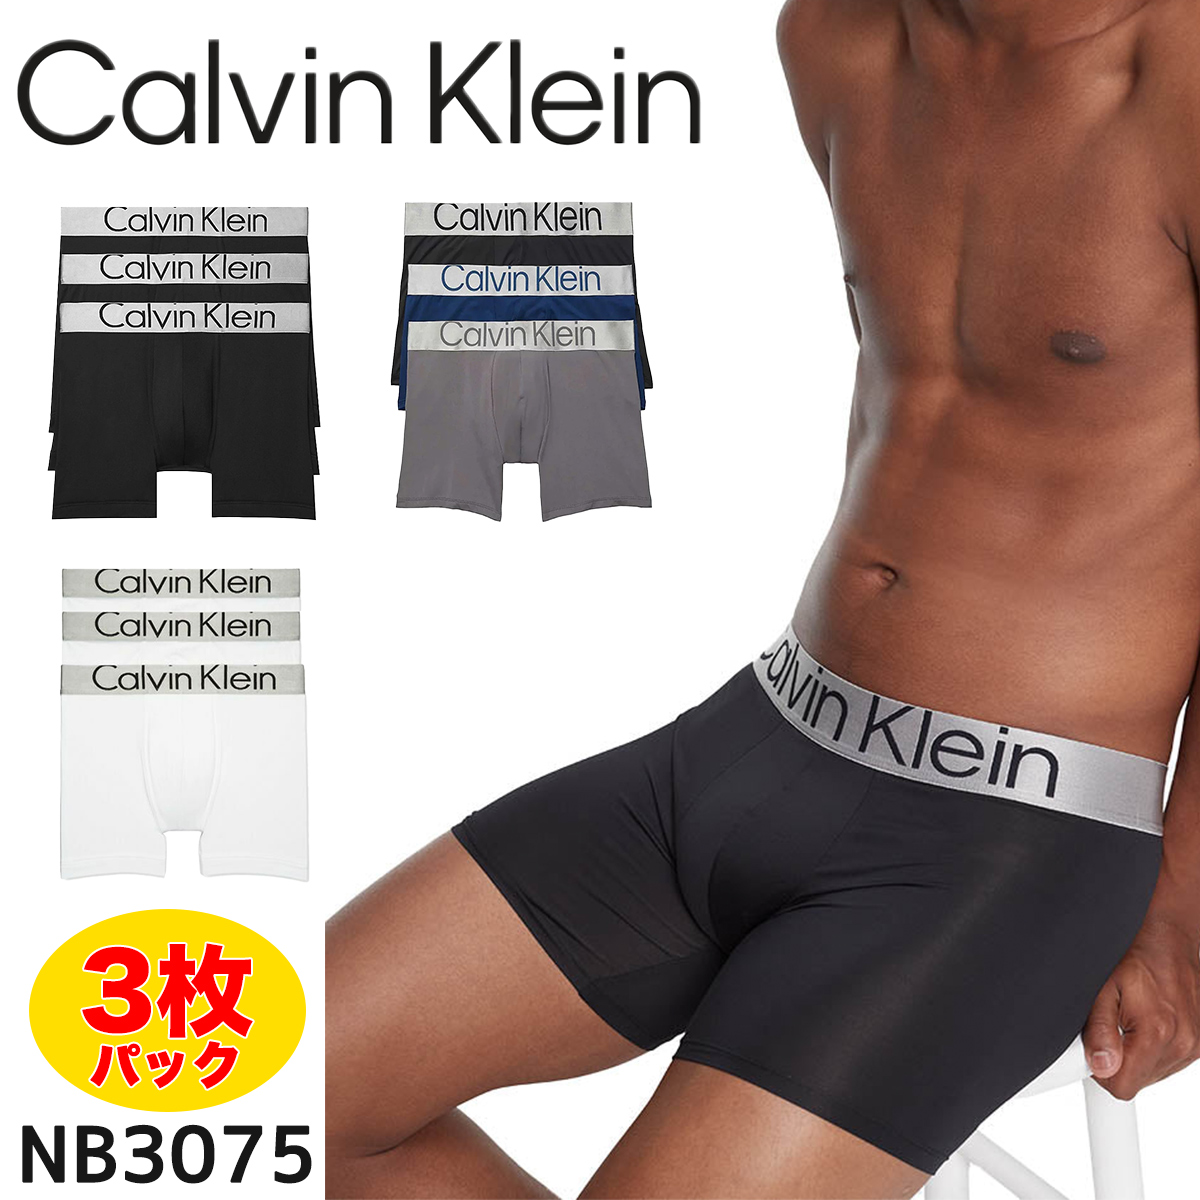 カルバンクライン Calvin Klein ボクサーパンツ CK 下着 3枚パック アンダーウェア メンズ 男性 NB3075 コットン インナー ブラック ホワイト ブルー パンツ 無地 シンプル 誕生日プレゼント 彼氏 父 男性 旦那 ギフト [衣類]